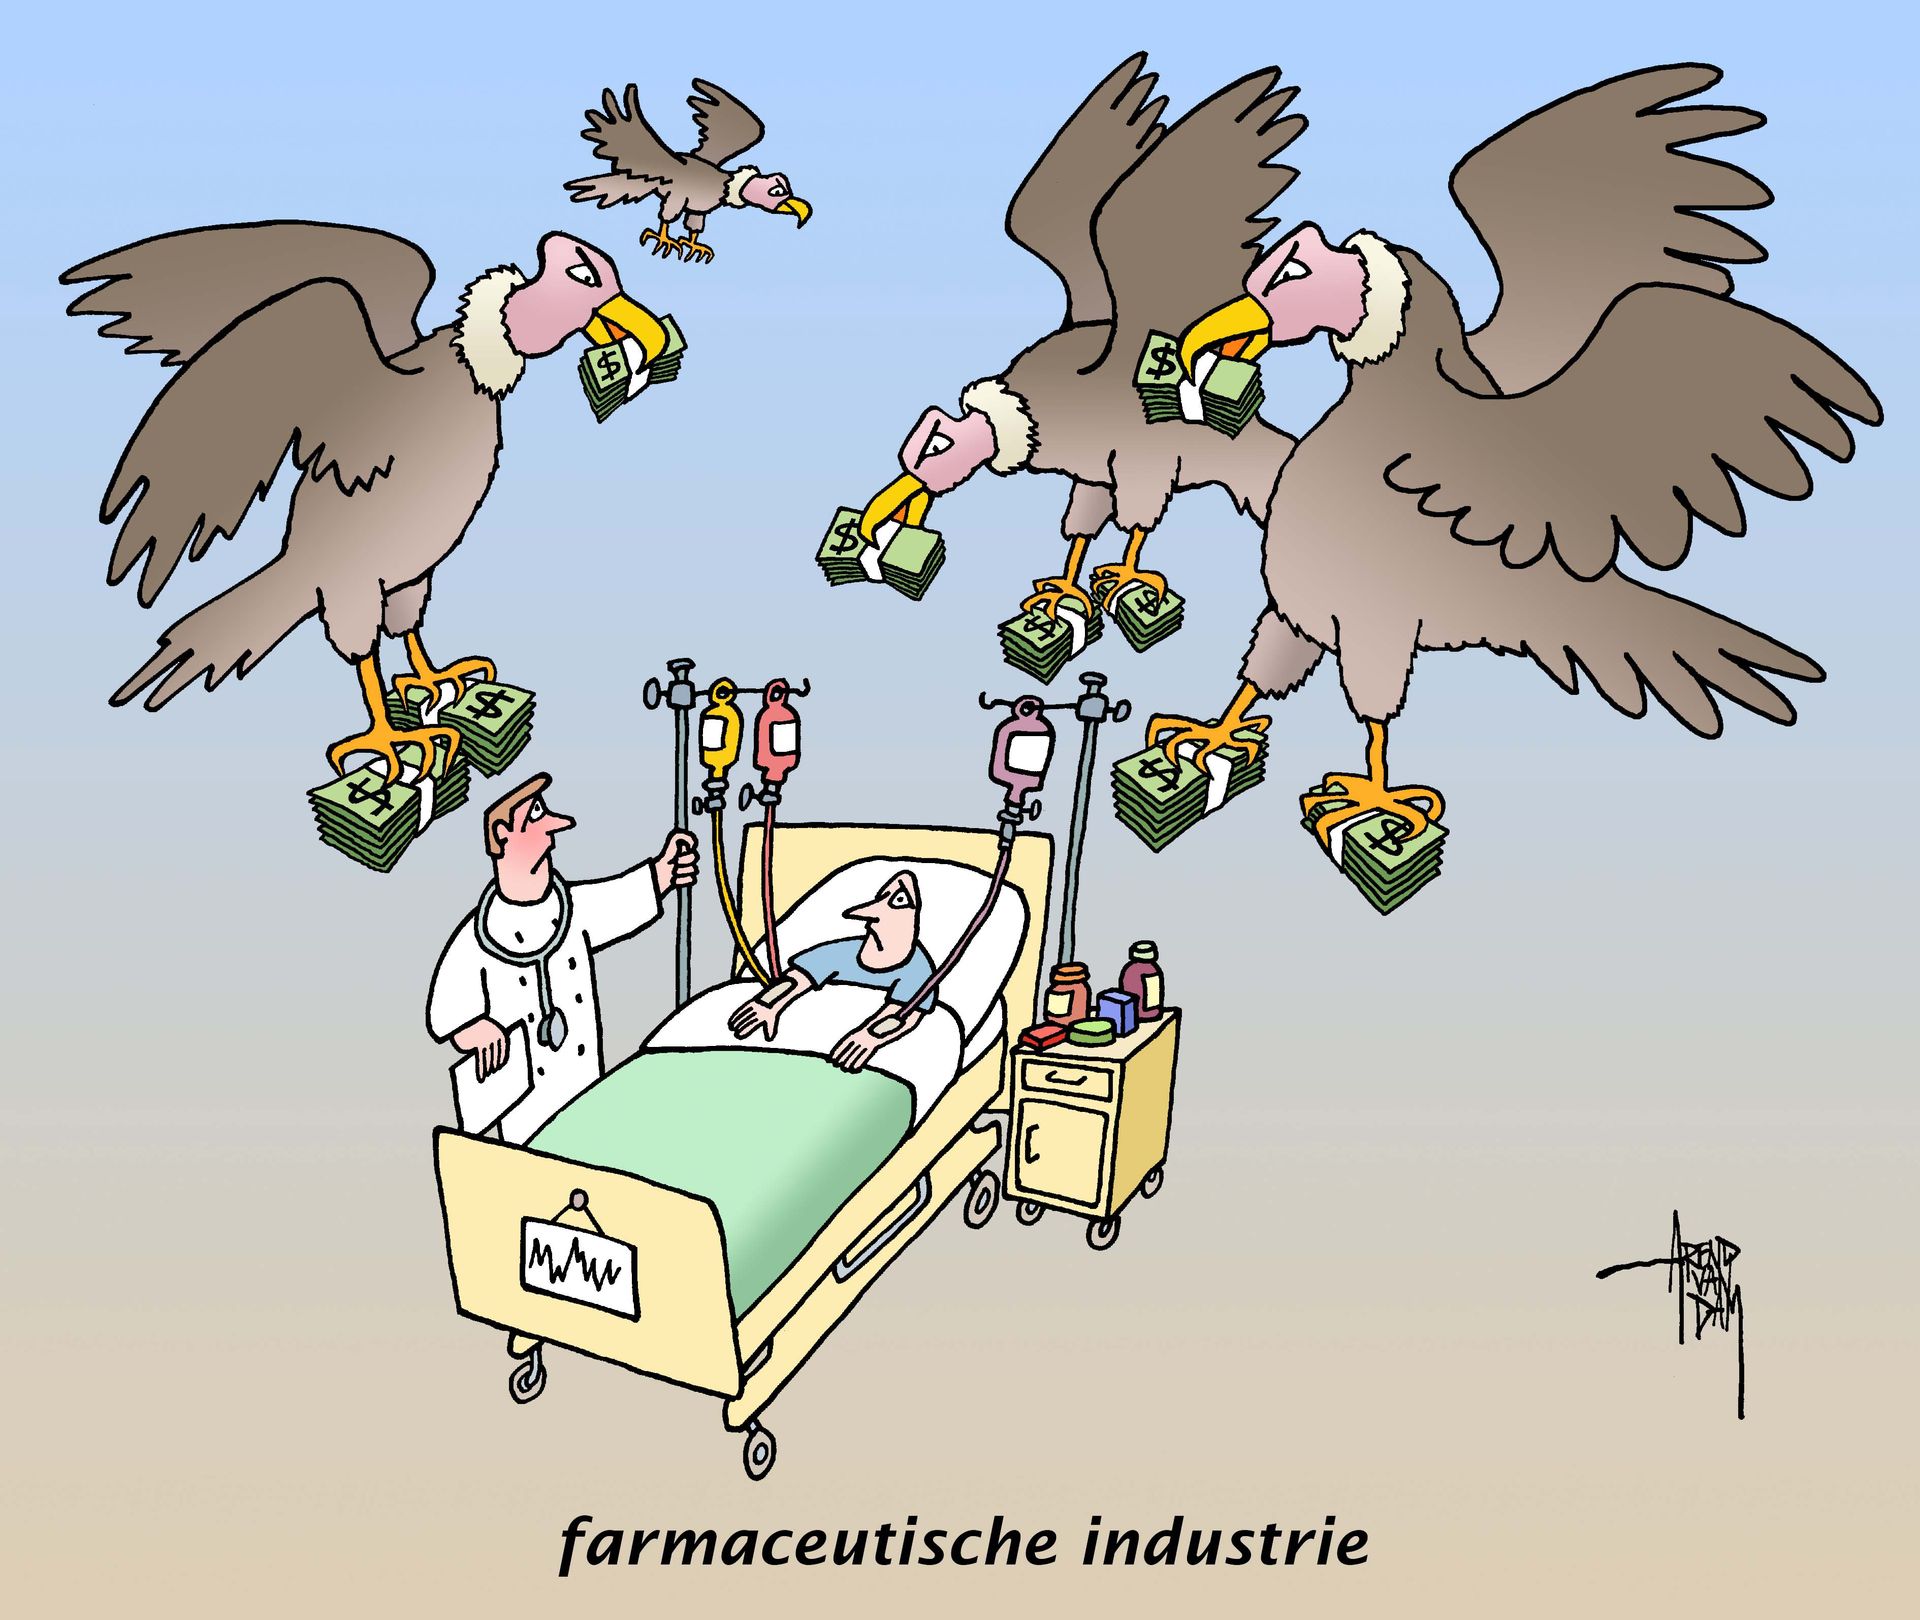 farmaceutischeindustrie